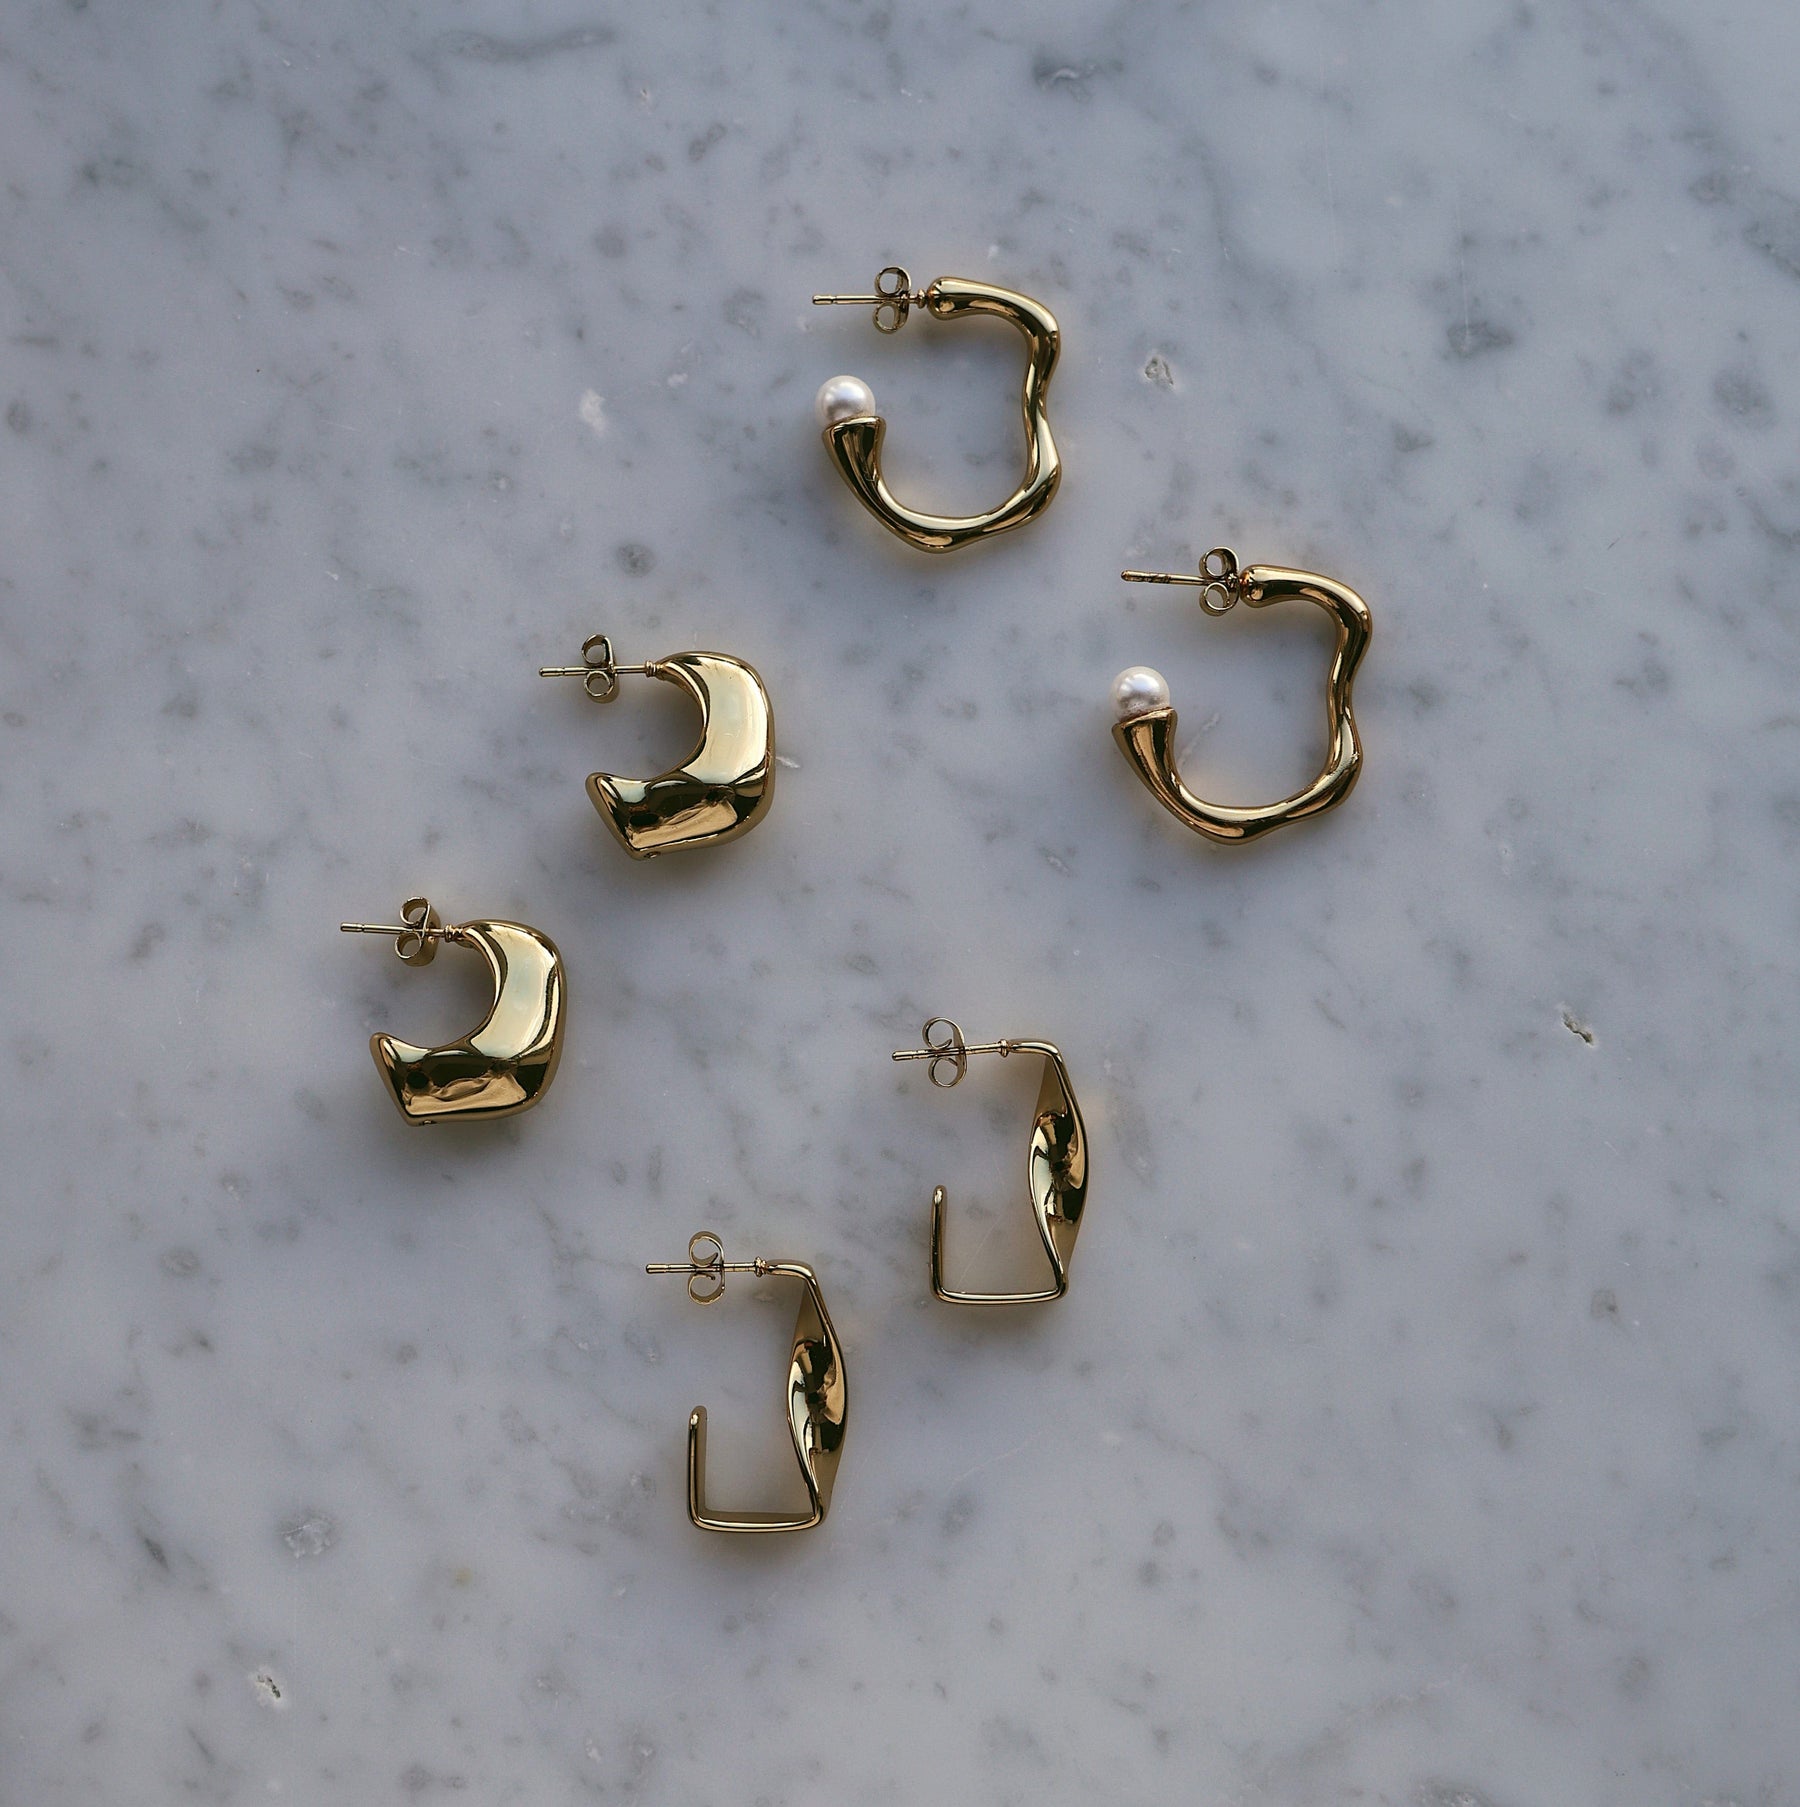 BOHOMOON Stainless Steel Waves Pearl Hoop Earrings Gold